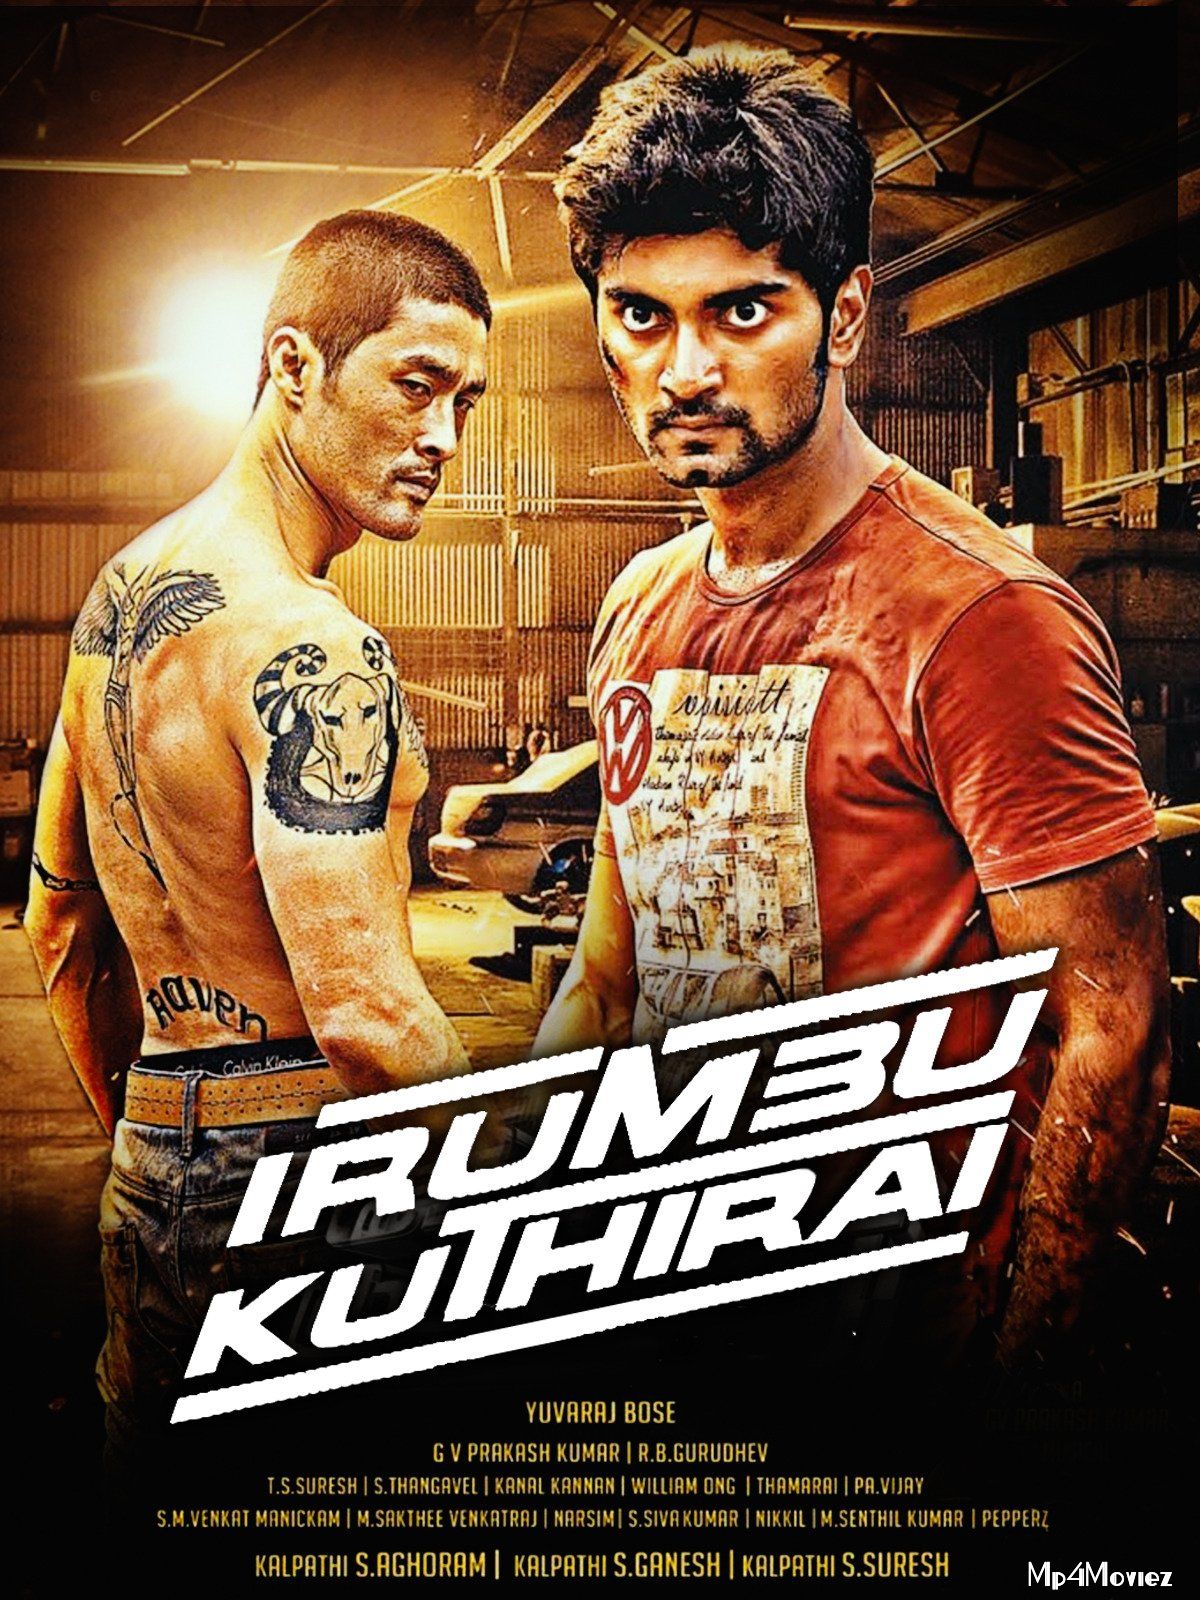 Dhoom Machale (Irumbu Kuthirai) 2021 Hindi Dubbed Full Movie download full movie